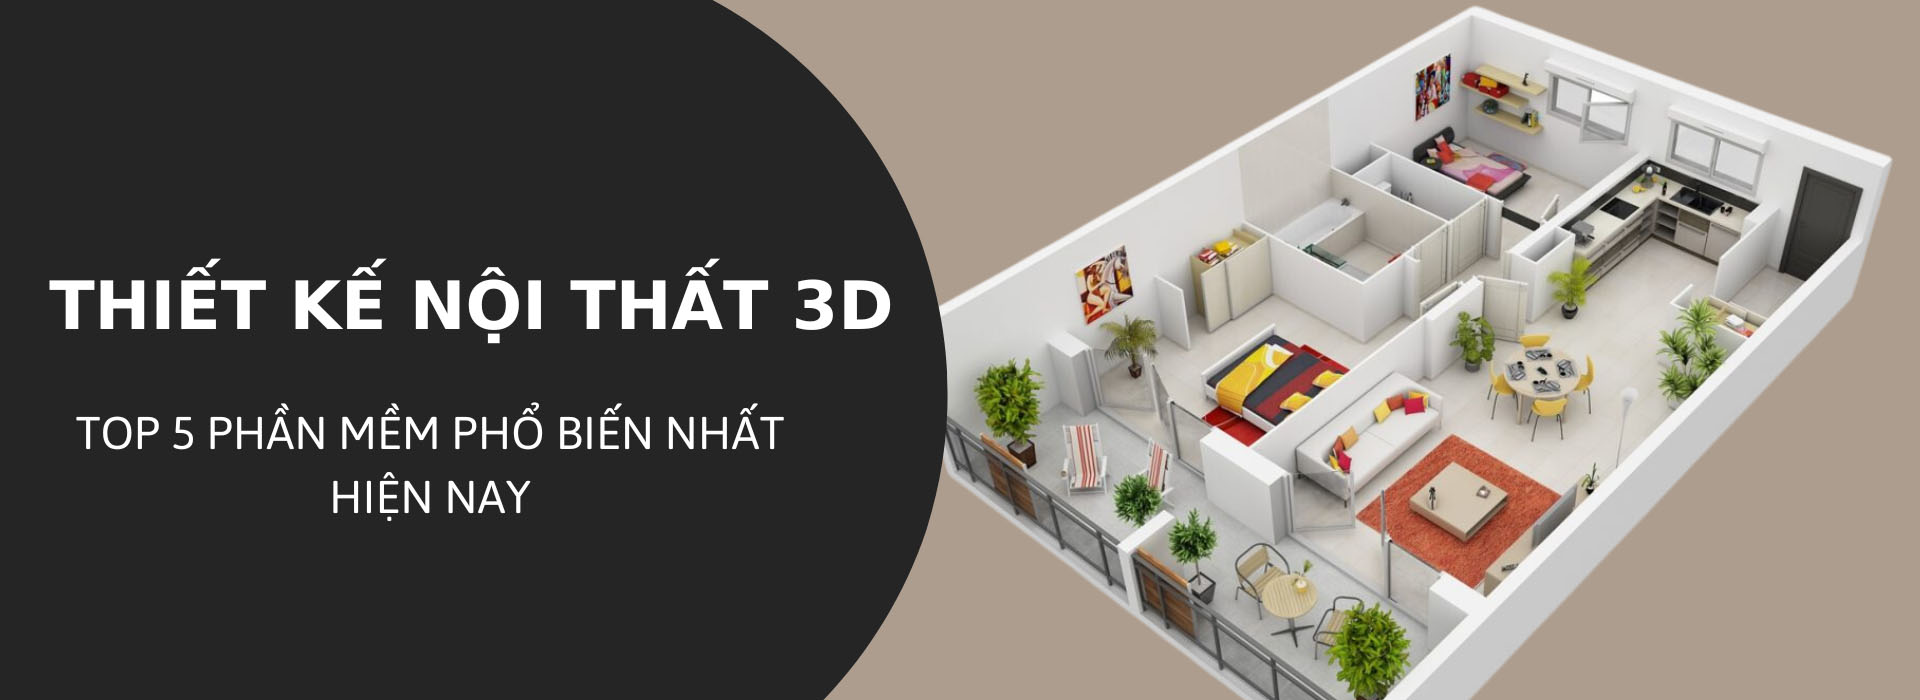 Top 5 phần mềm thiết kế nội thất 3D được lựa chọn hàng đầu